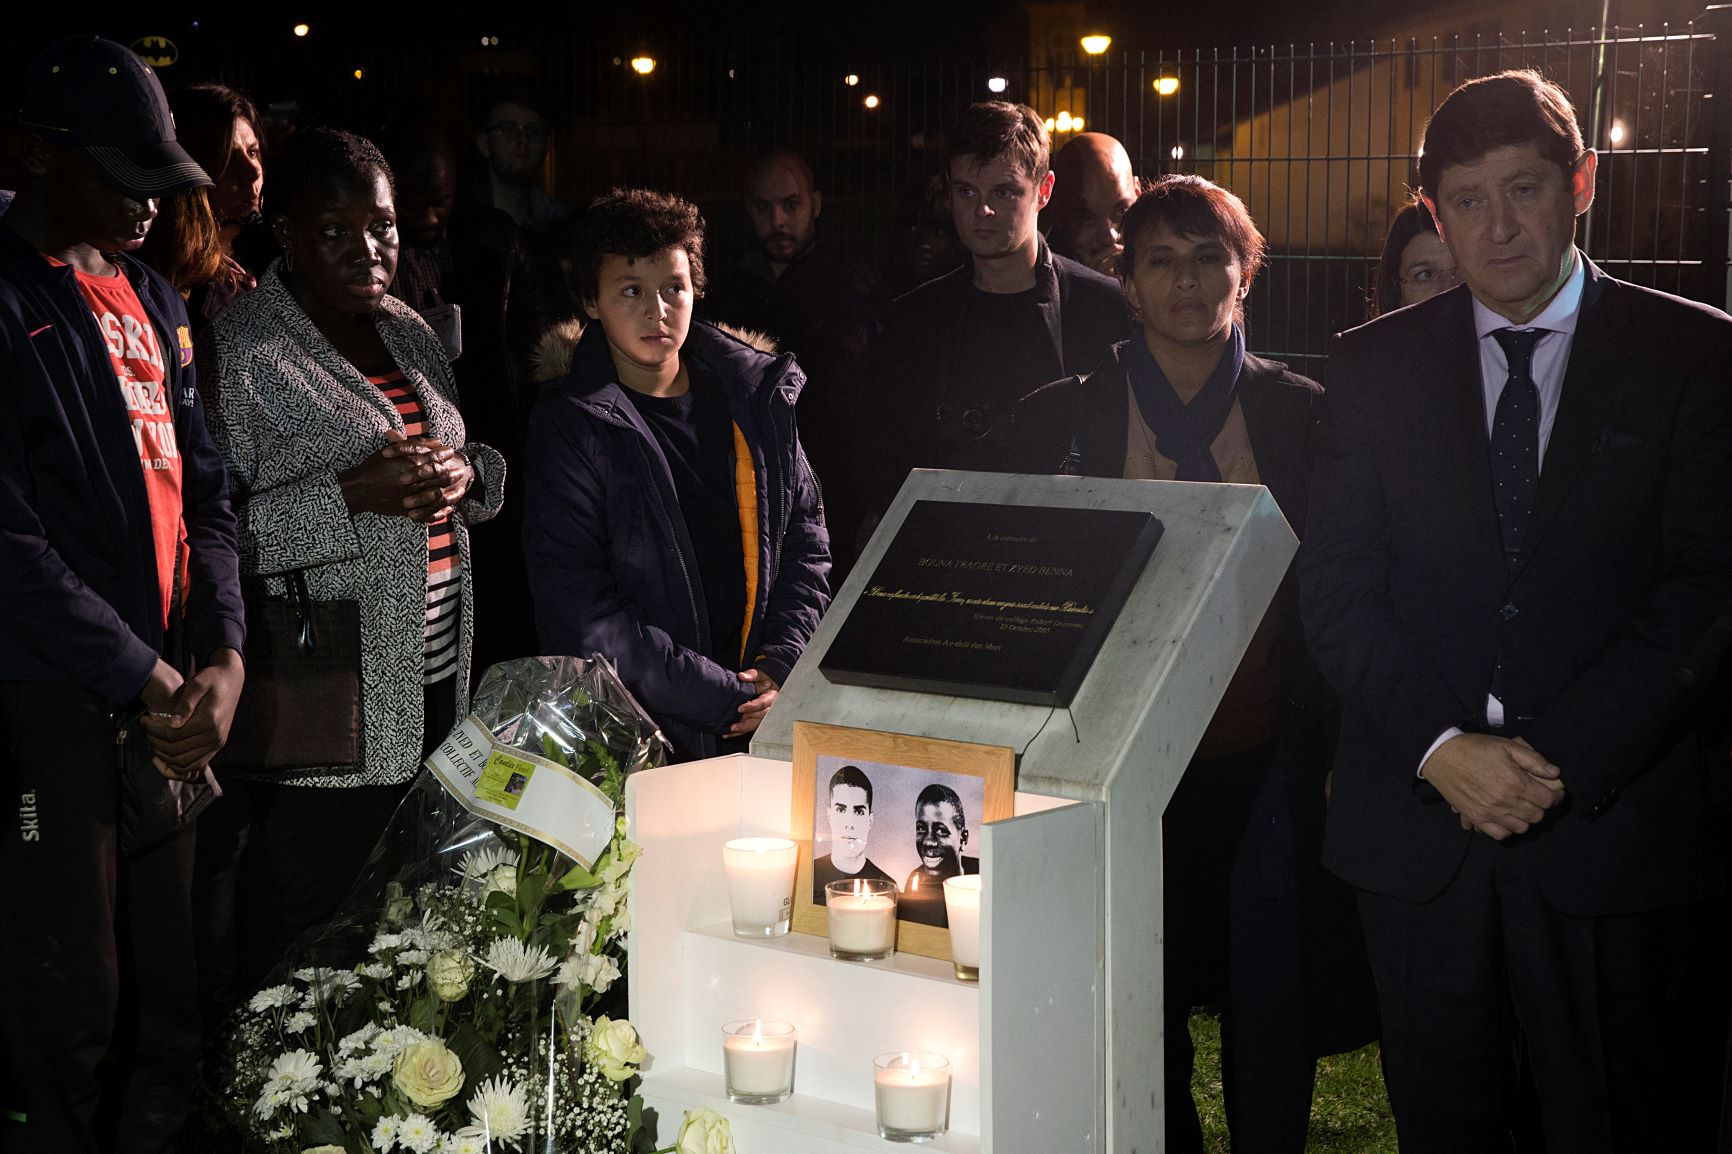 Le sénateur et ministre de la Jeunesse de l’époque Patrick Kanner (à droite) se tient près d’une plaque à la mémoire de Zyed Benna et Bouna Traoré, deux adolescents morts en fuyant la police (AFP)